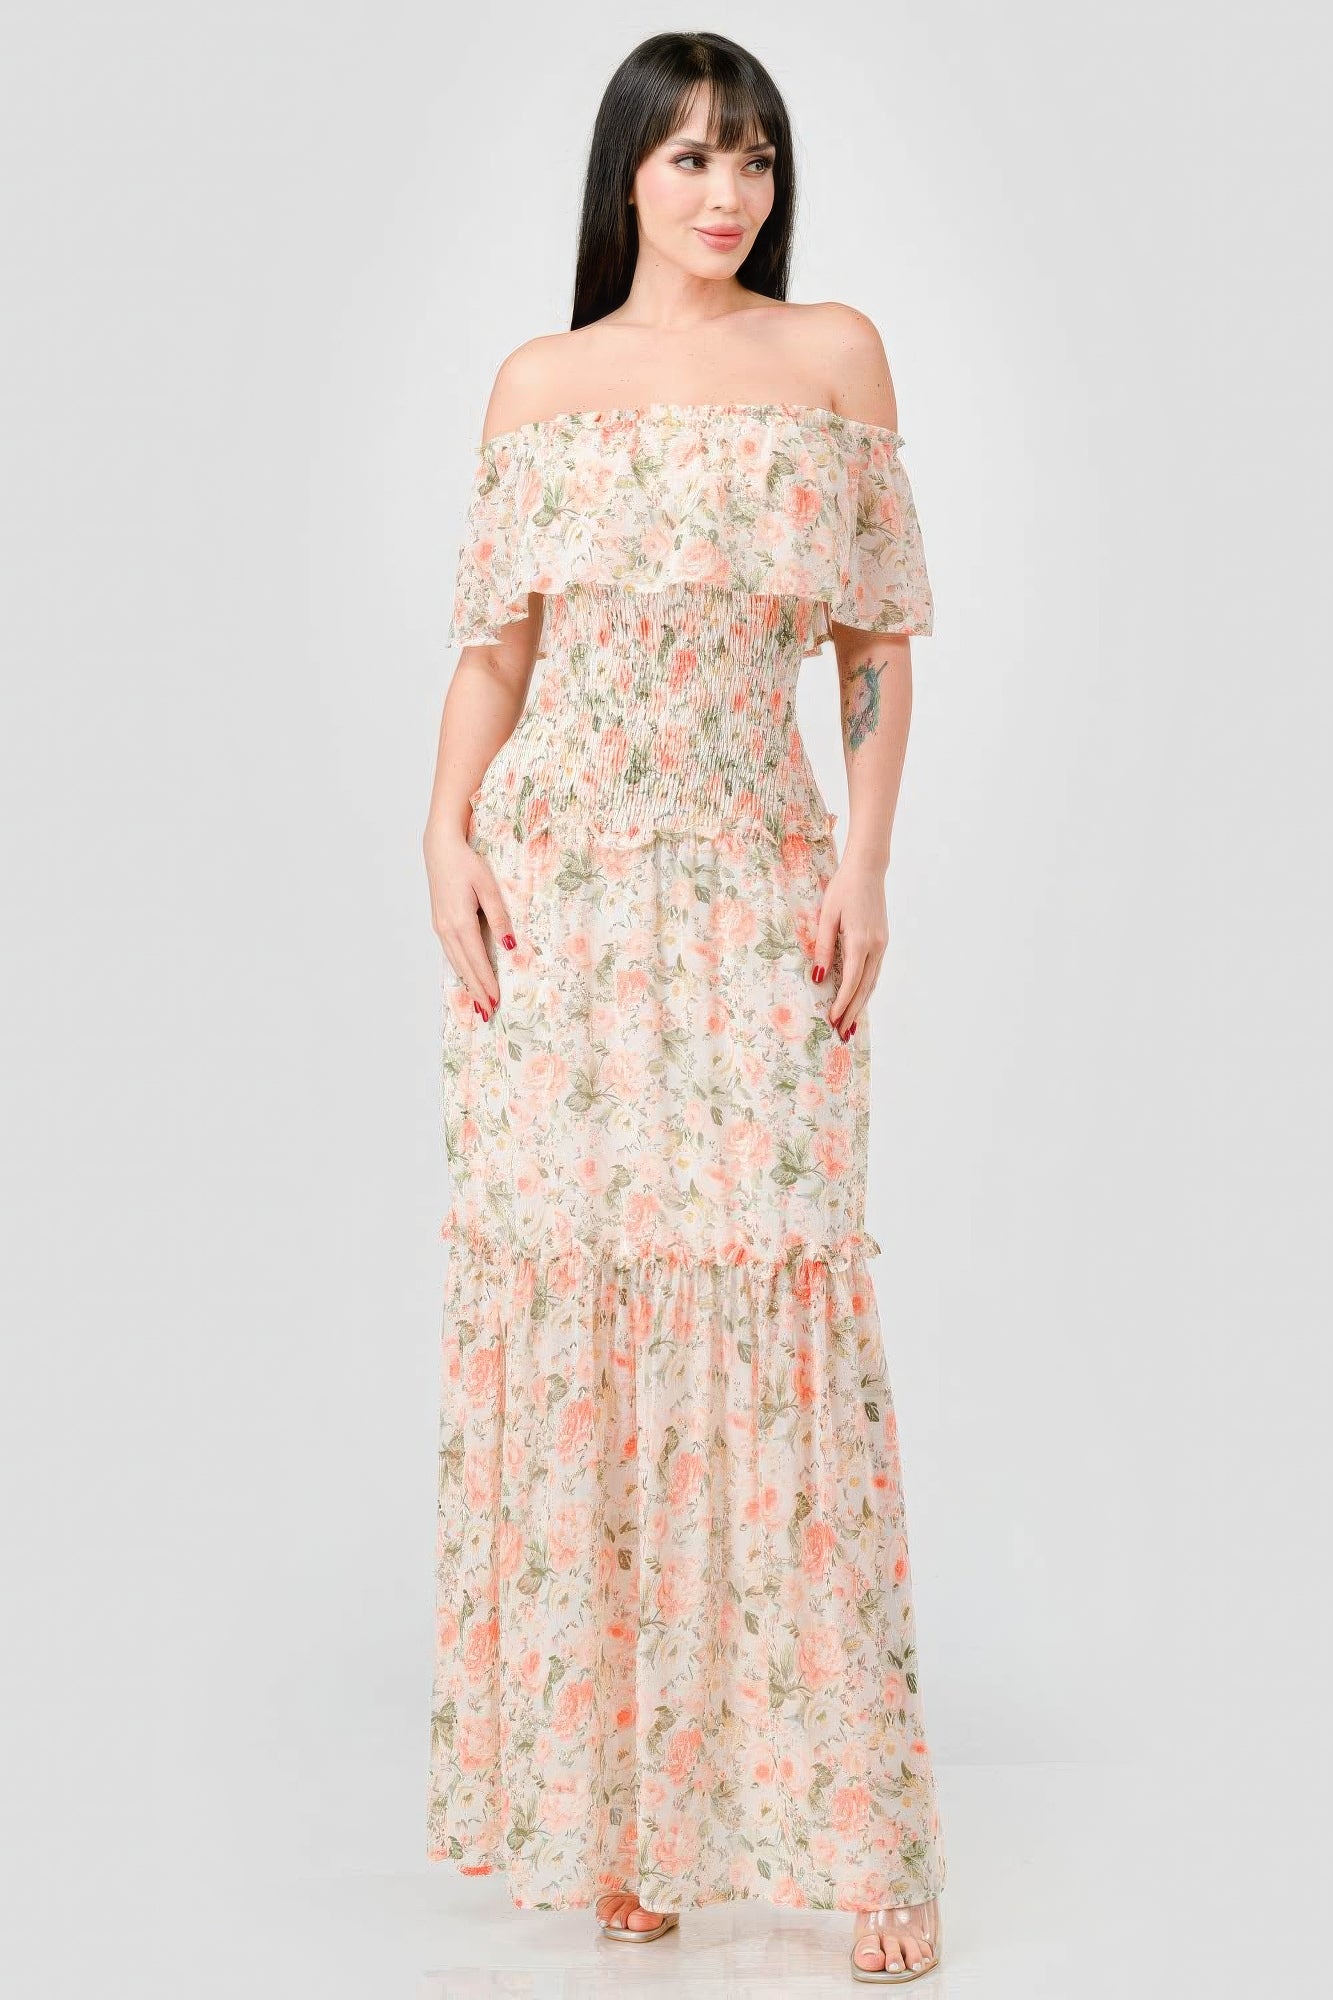 Floral Chiffon Maxi Dress